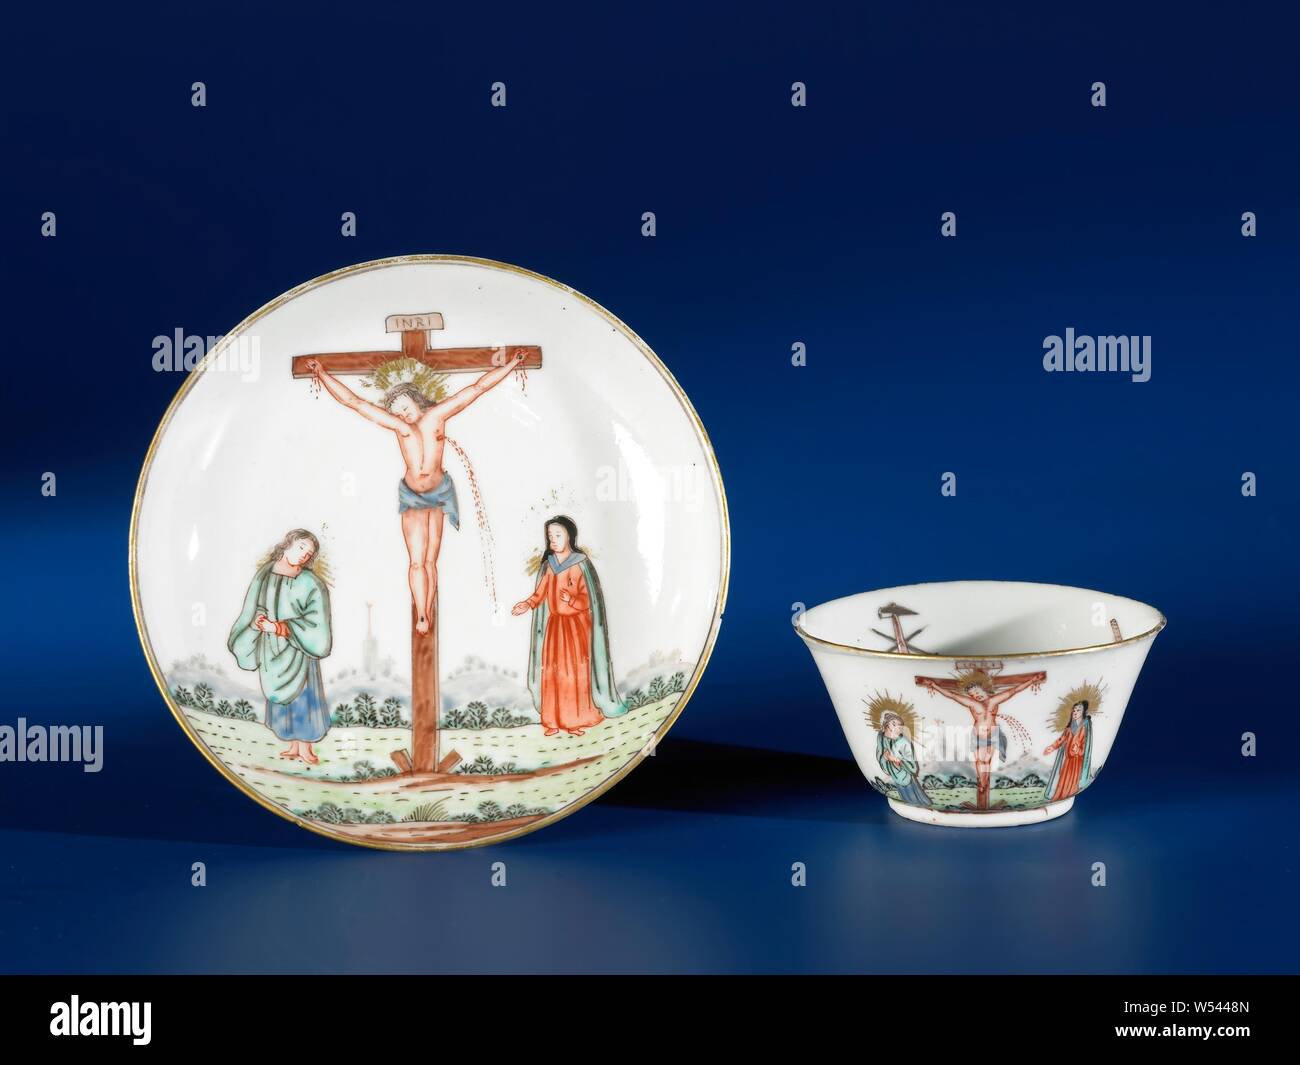 Coupe en forme de cloche avec la Cruxifixion et Jean l'Évangéliste et Marie Madeleine, en forme de cloche tasse de porcelaine peinte sur l'émail en bleu, rouge, vert, brun, noir et or. Sur le mur la Crucifixion avec Jean l'Évangéliste et Marie Madeleine près de la croix, à l'extérieur et l'intérieur de la passion d'outils. La représentation européenne dans les couleurs de l'émail., anonyme, la Chine, l'c. 1740 - c. 1760, dynastie Qing-(1644-1912) / période de Qianlong (1736-1795), porcelaine (matériau), vernis, peinture, H 3,8 cm d 7 cm d 3,5 cm Banque D'Images